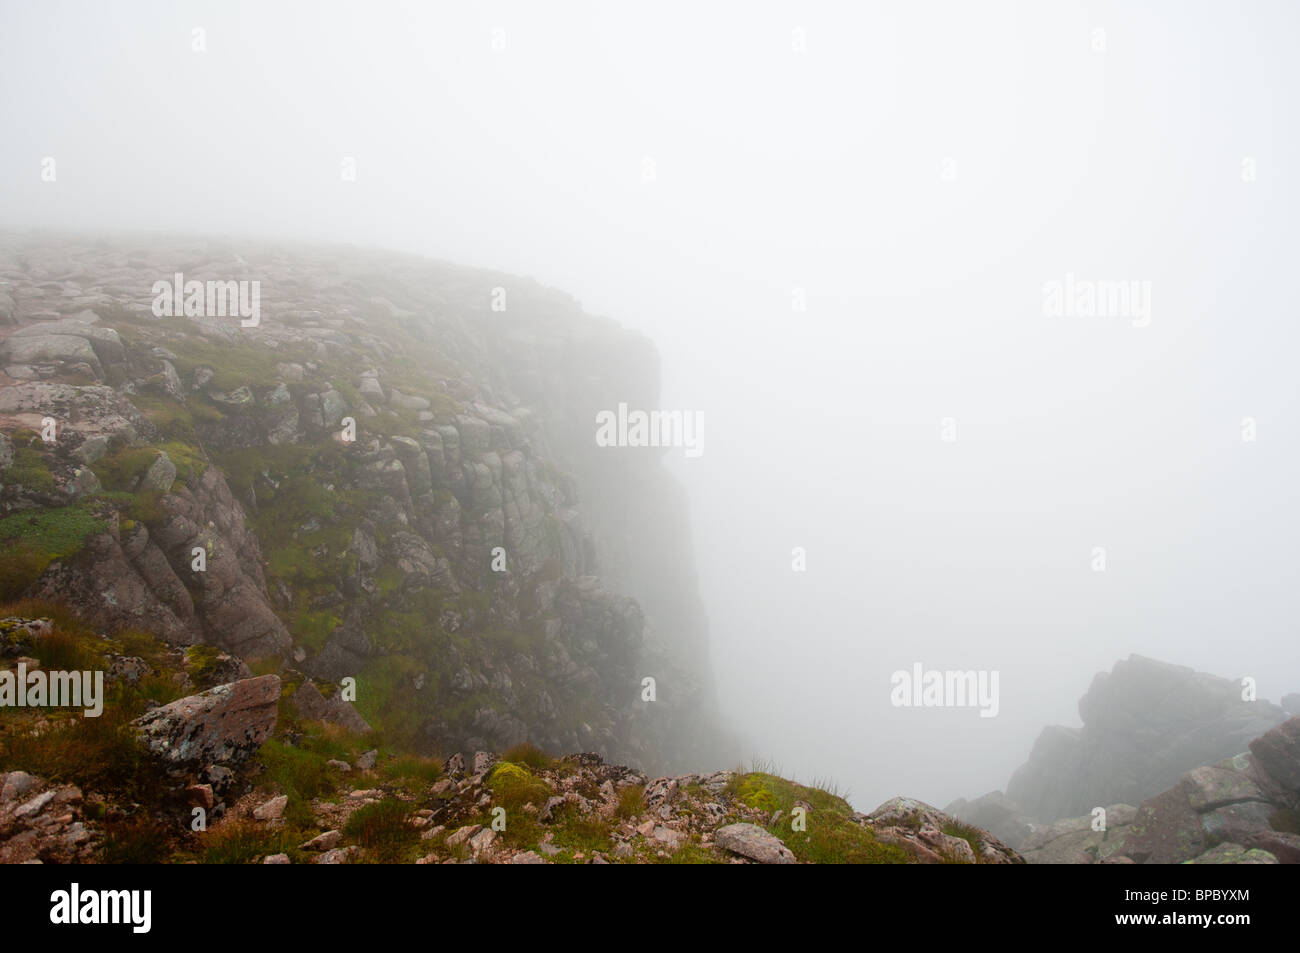 Precipice in the fog, Cairngorm mountains, Scotland Stock Photo